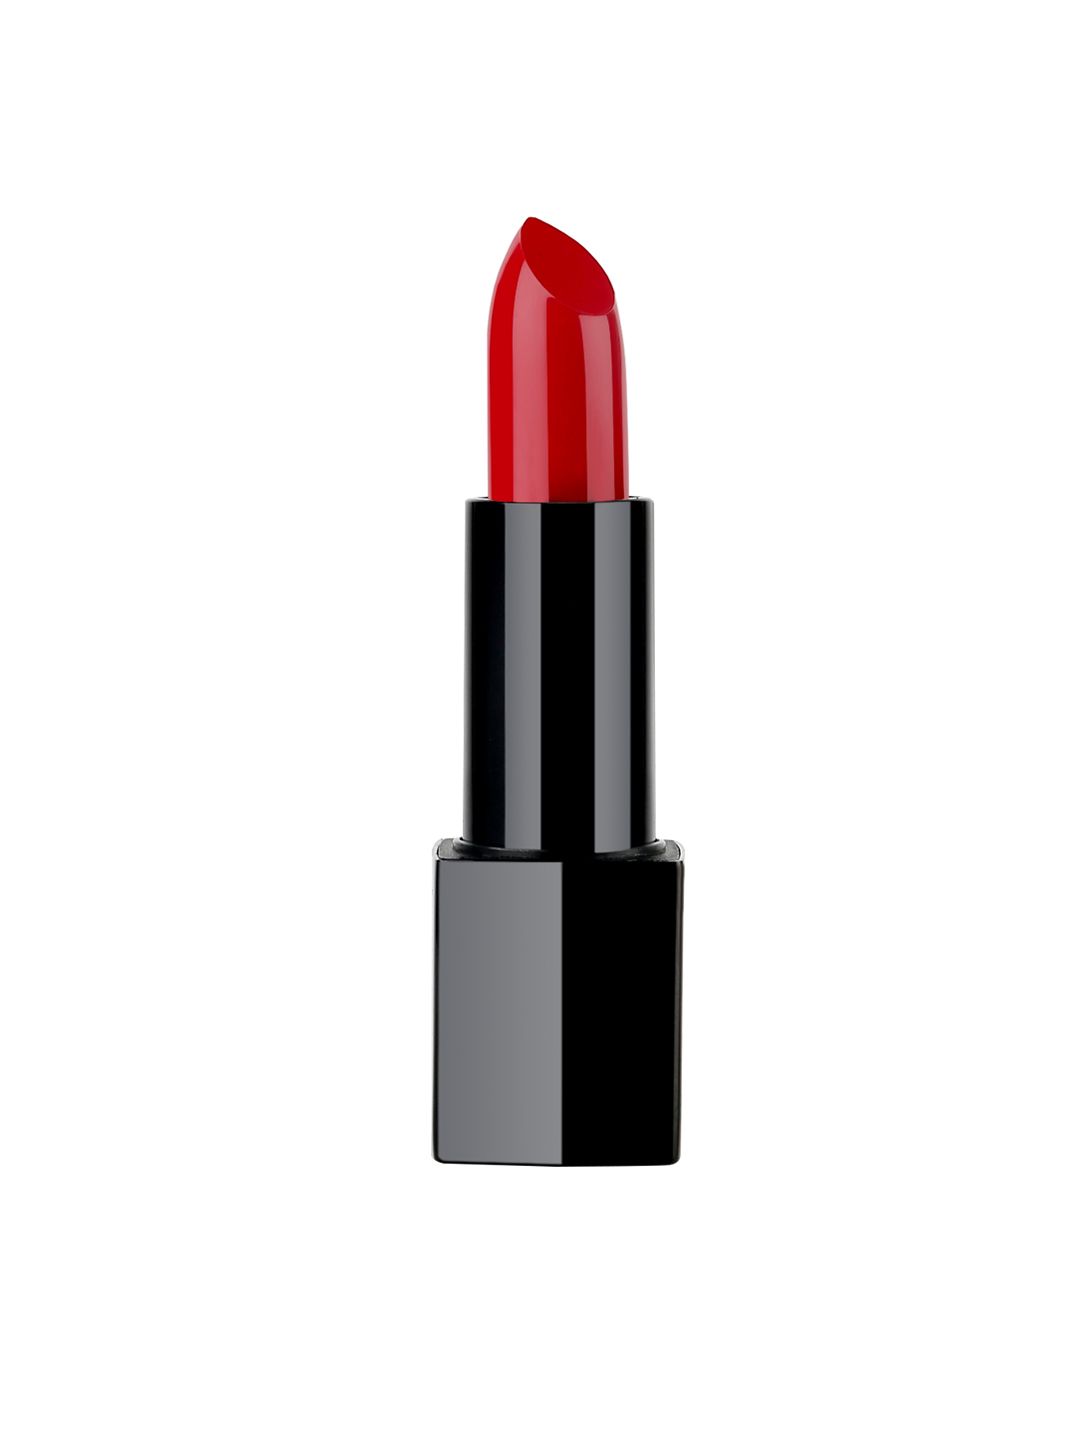 PAC Lip Dip Lipstick- Rumour 06 Price in India